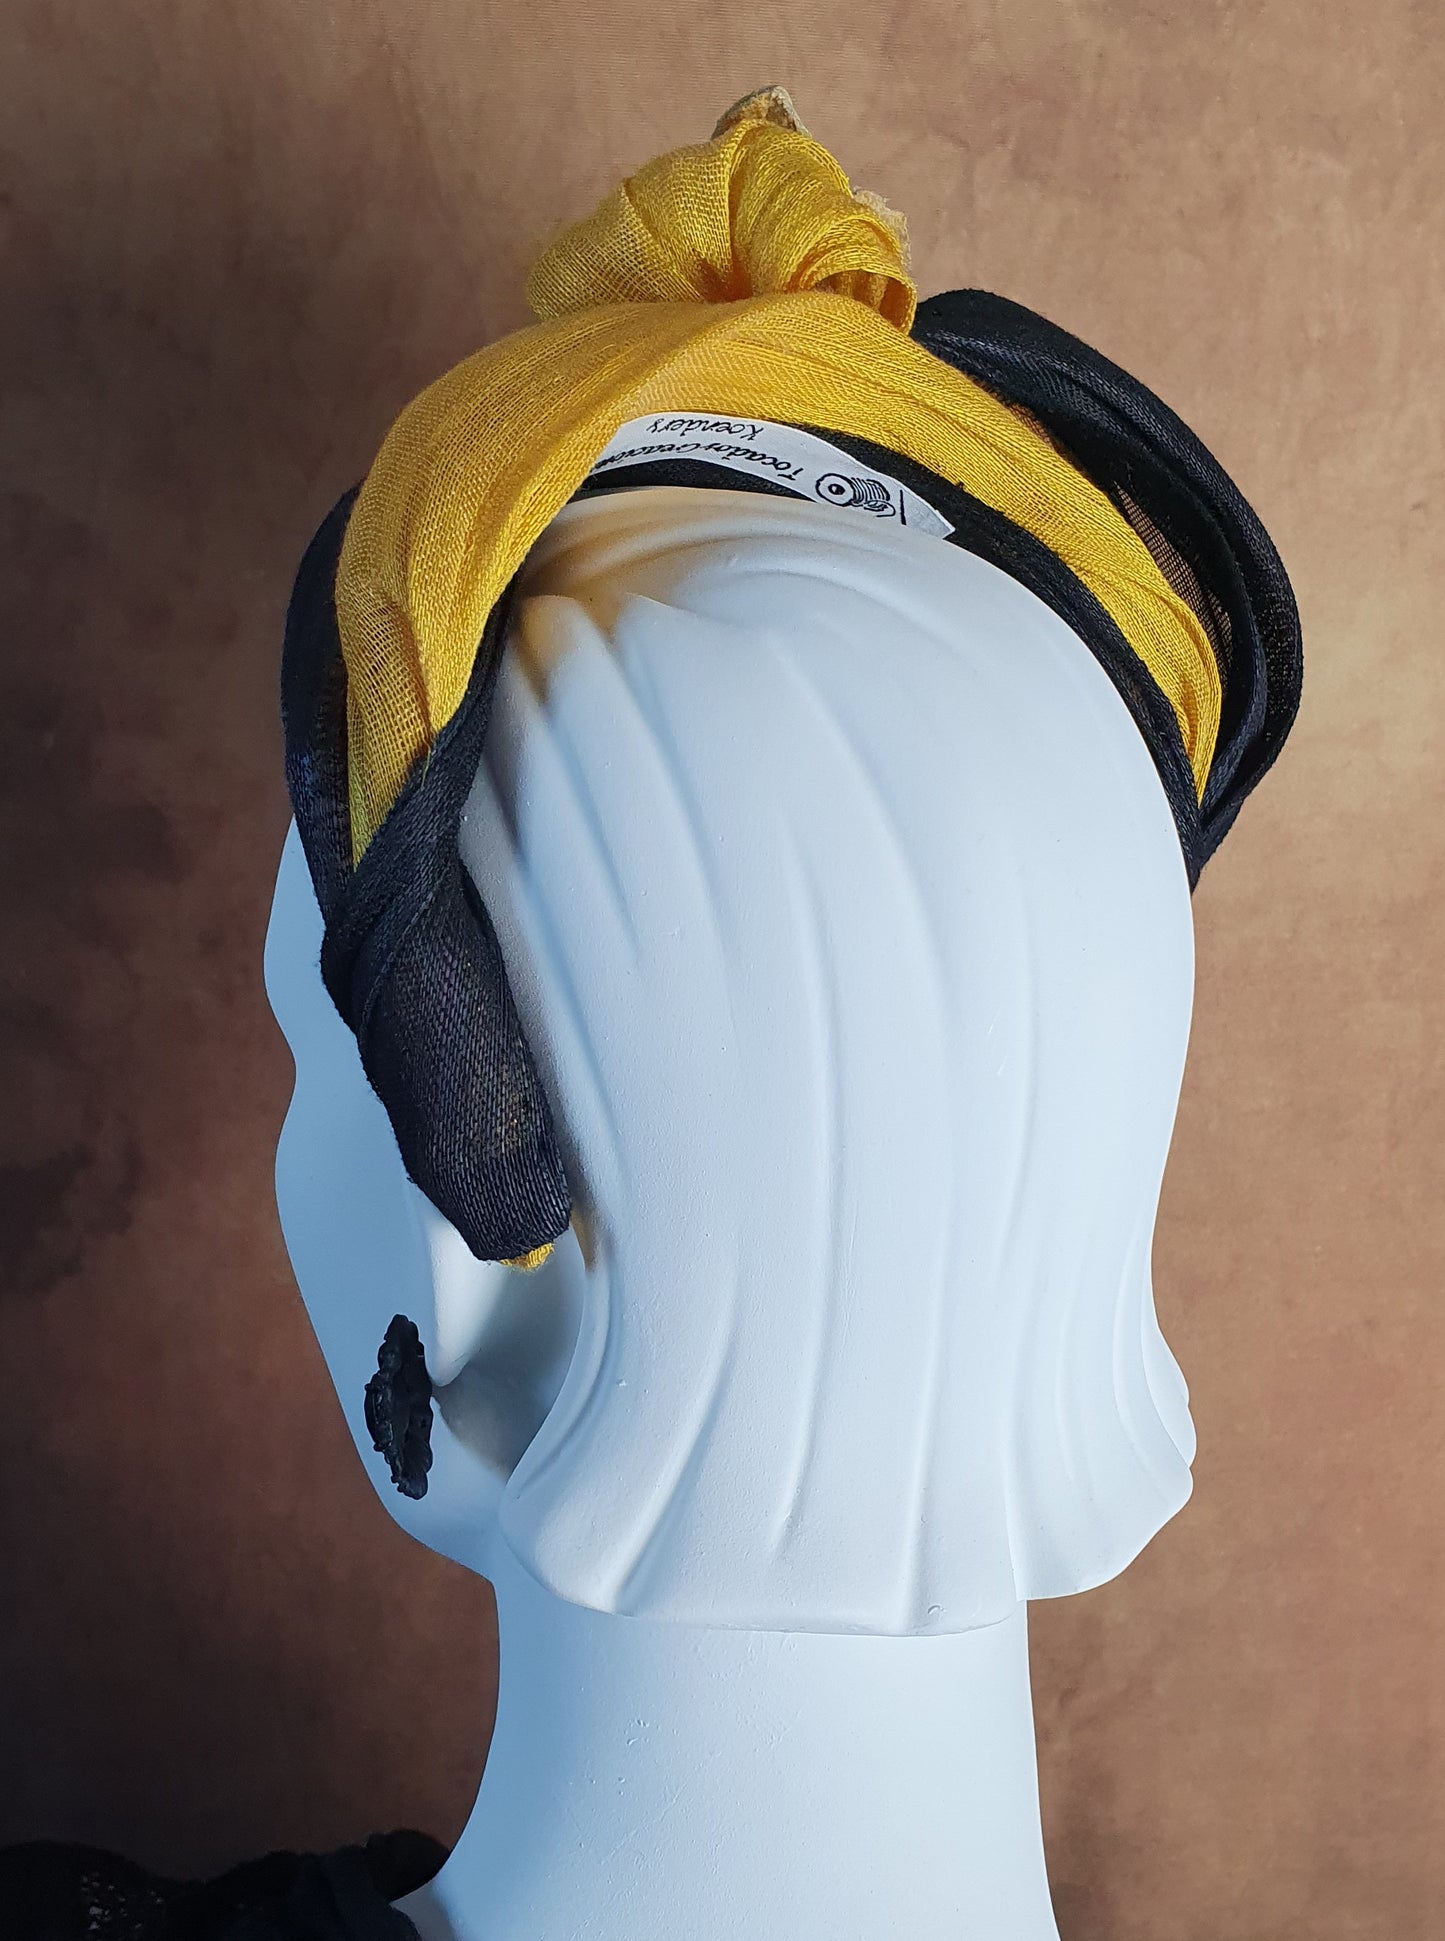 Handgemaakte gele en zwarte abaca zijden hoofdband, fascinator, tiara, gast hoofdband, bruids hoofdband, speciale gelegenheid